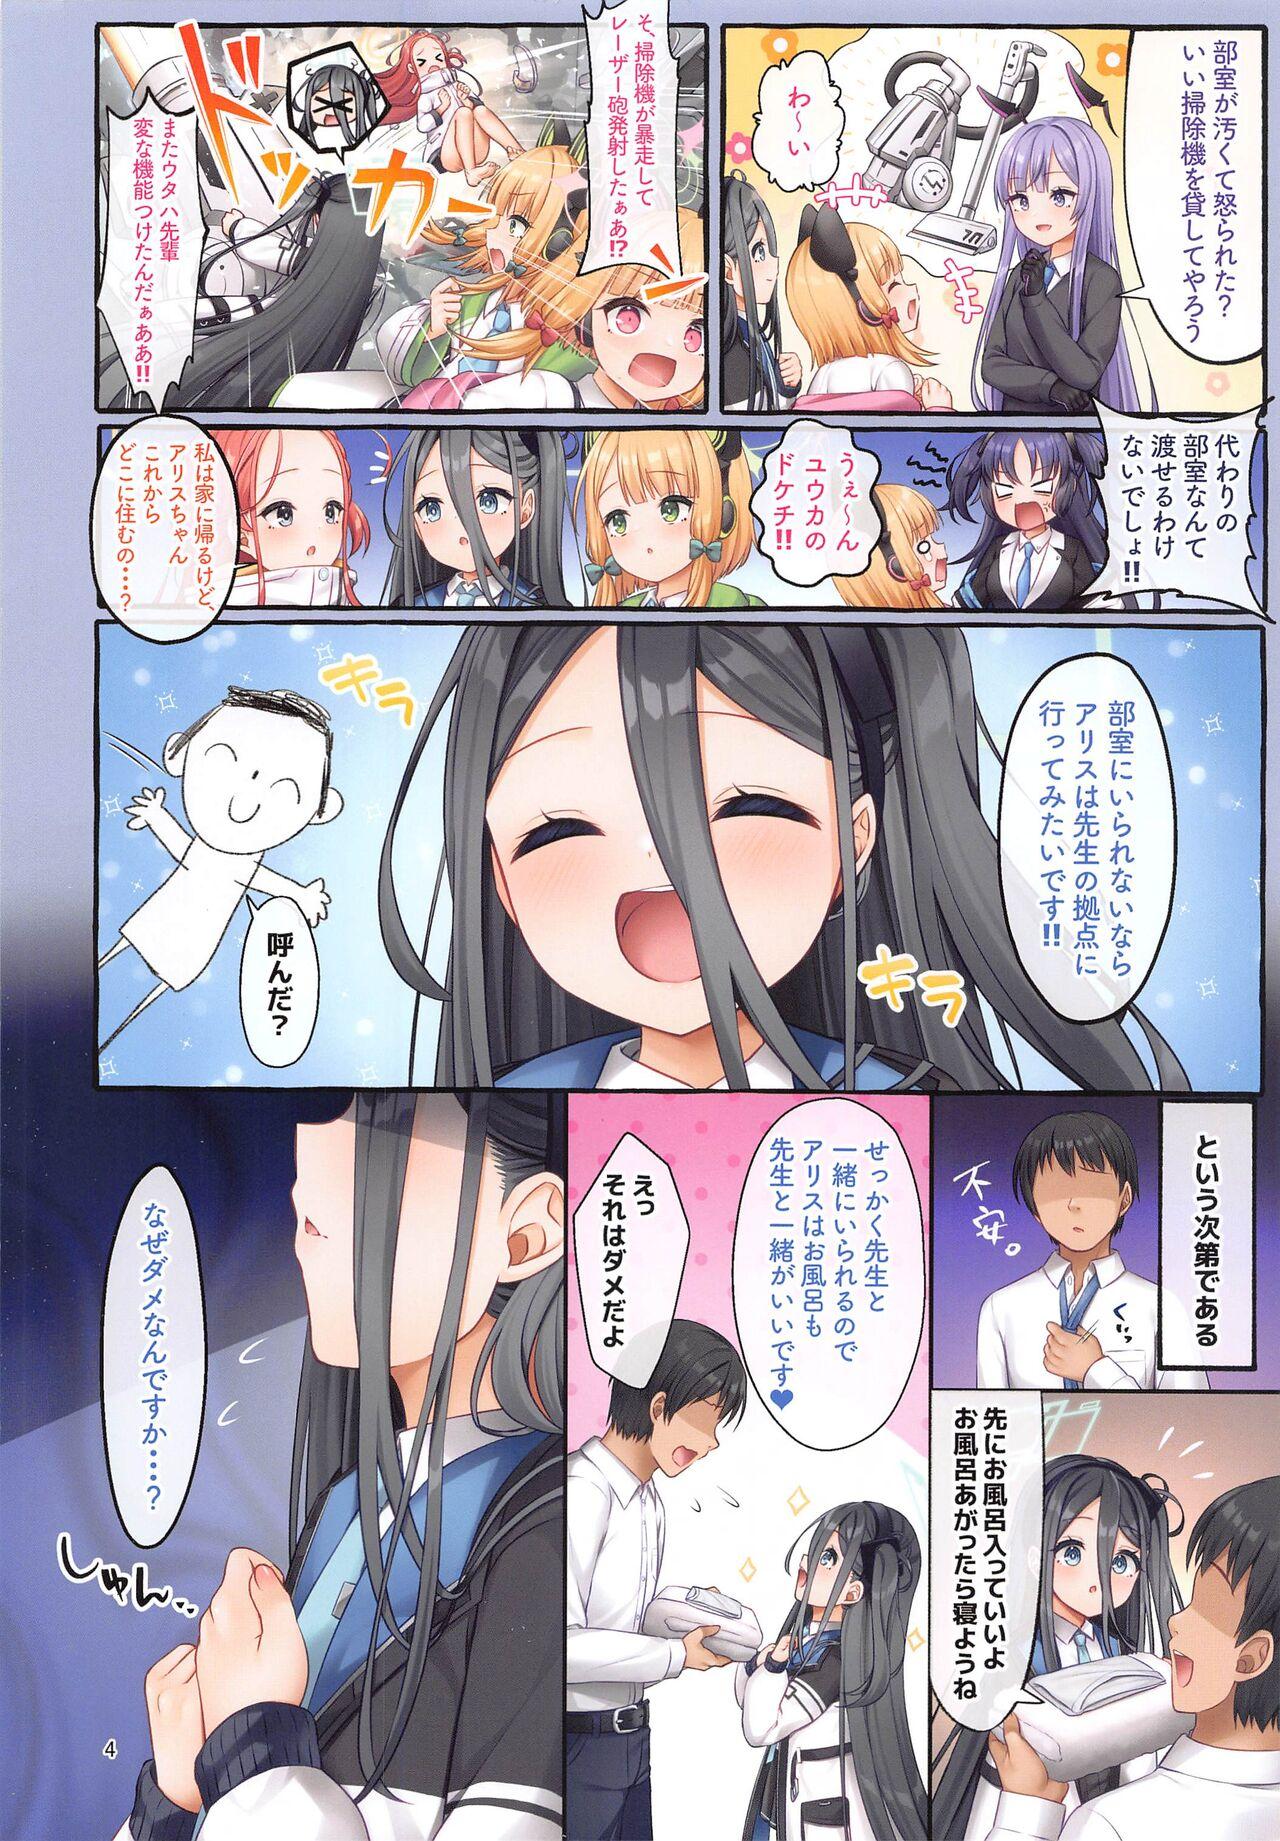 Suruba Alice wa Sensei to Dousei ga Shitai desu - Blue archive Bigtits - Page 3